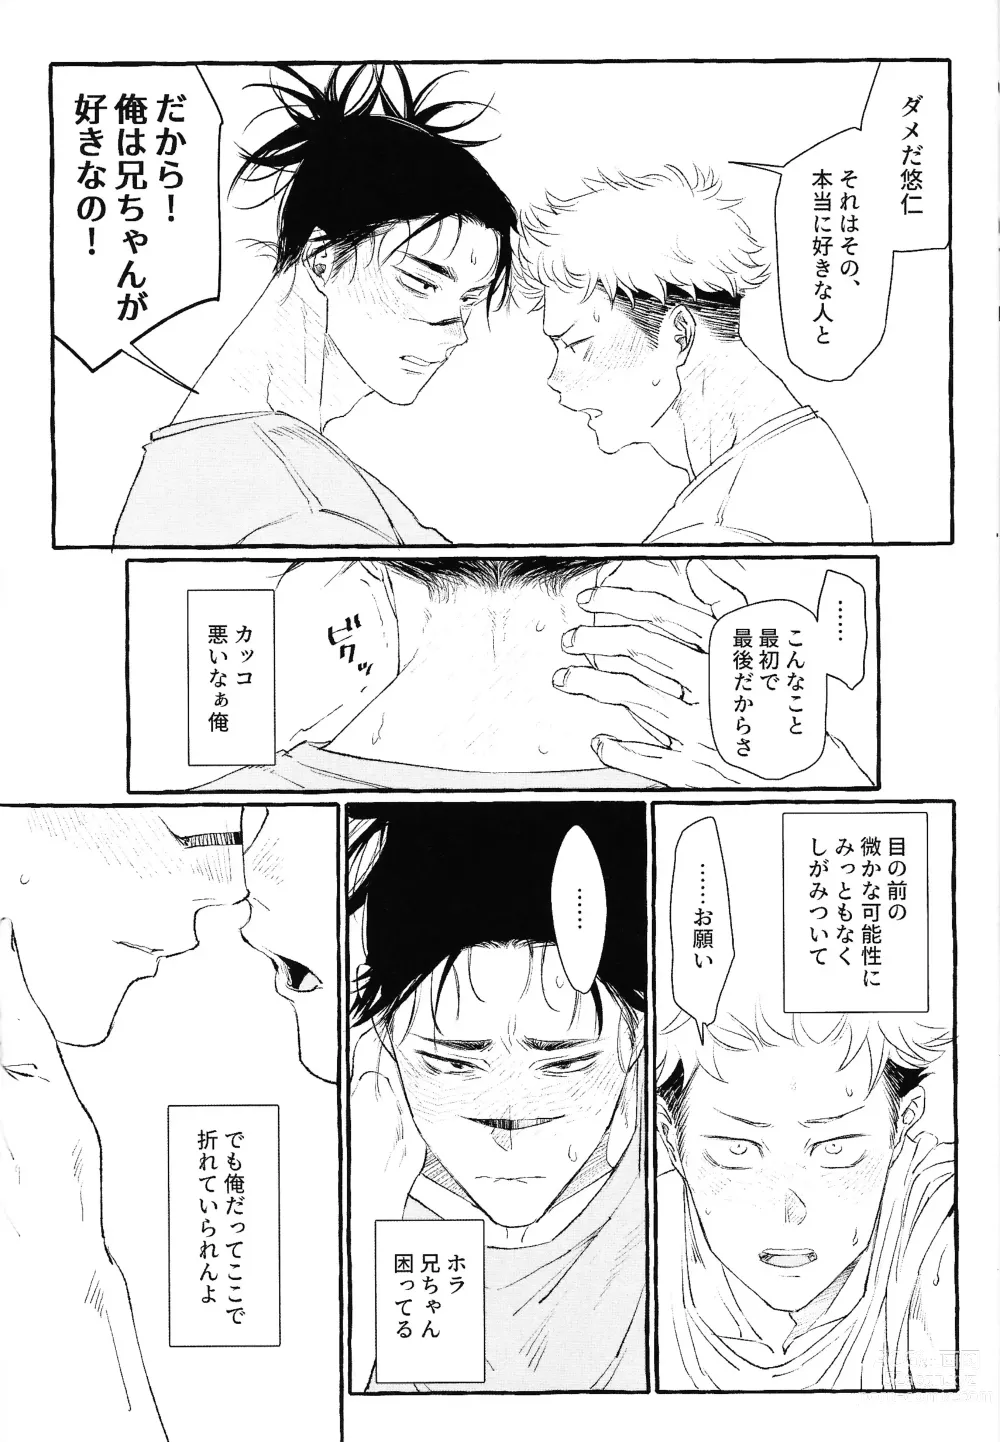 Page 53 of doujinshi Otouto no Kimochi